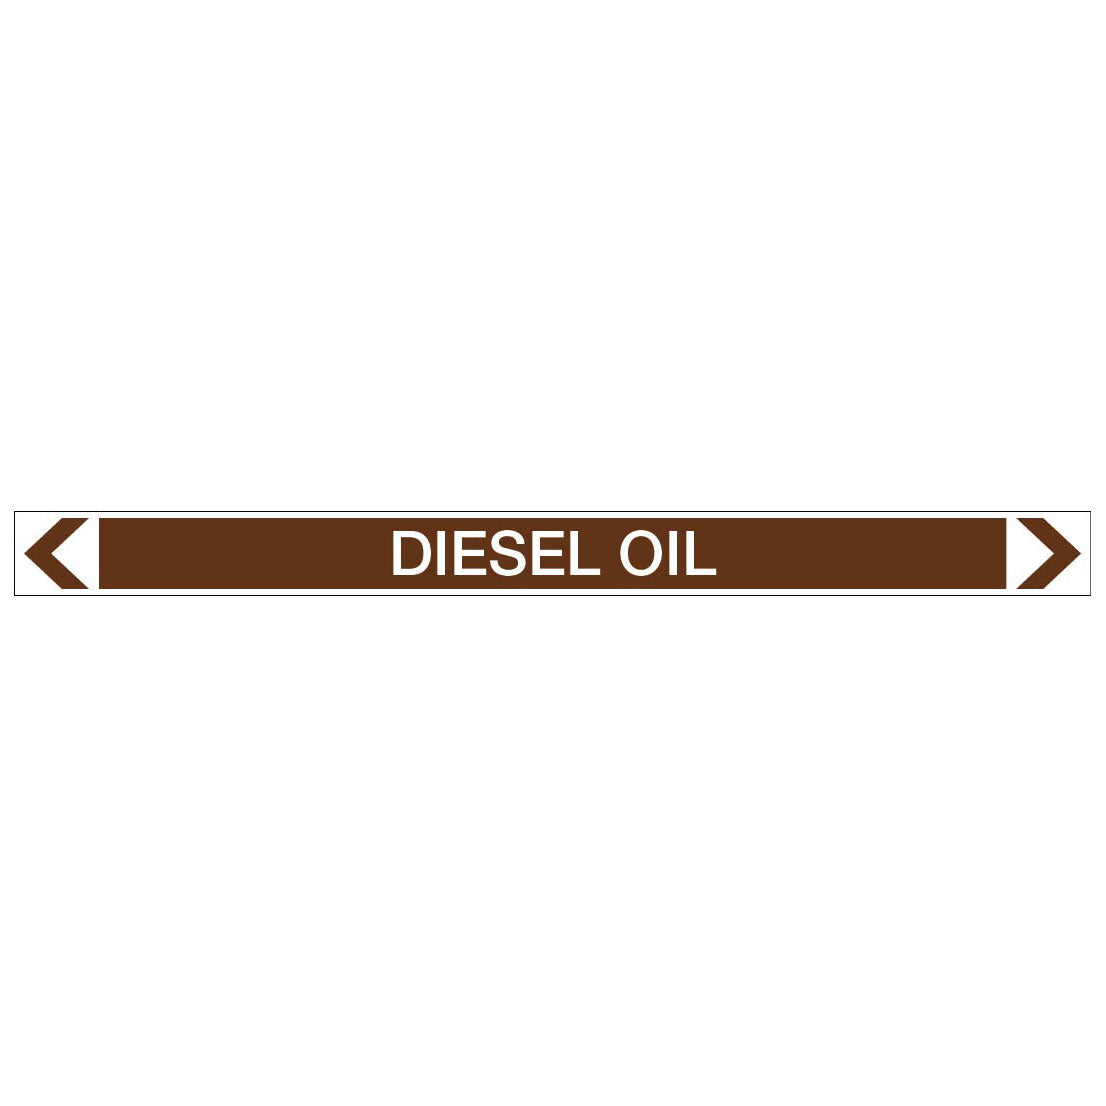 Oils - Diesel Oil - Pipe Marker Sticker